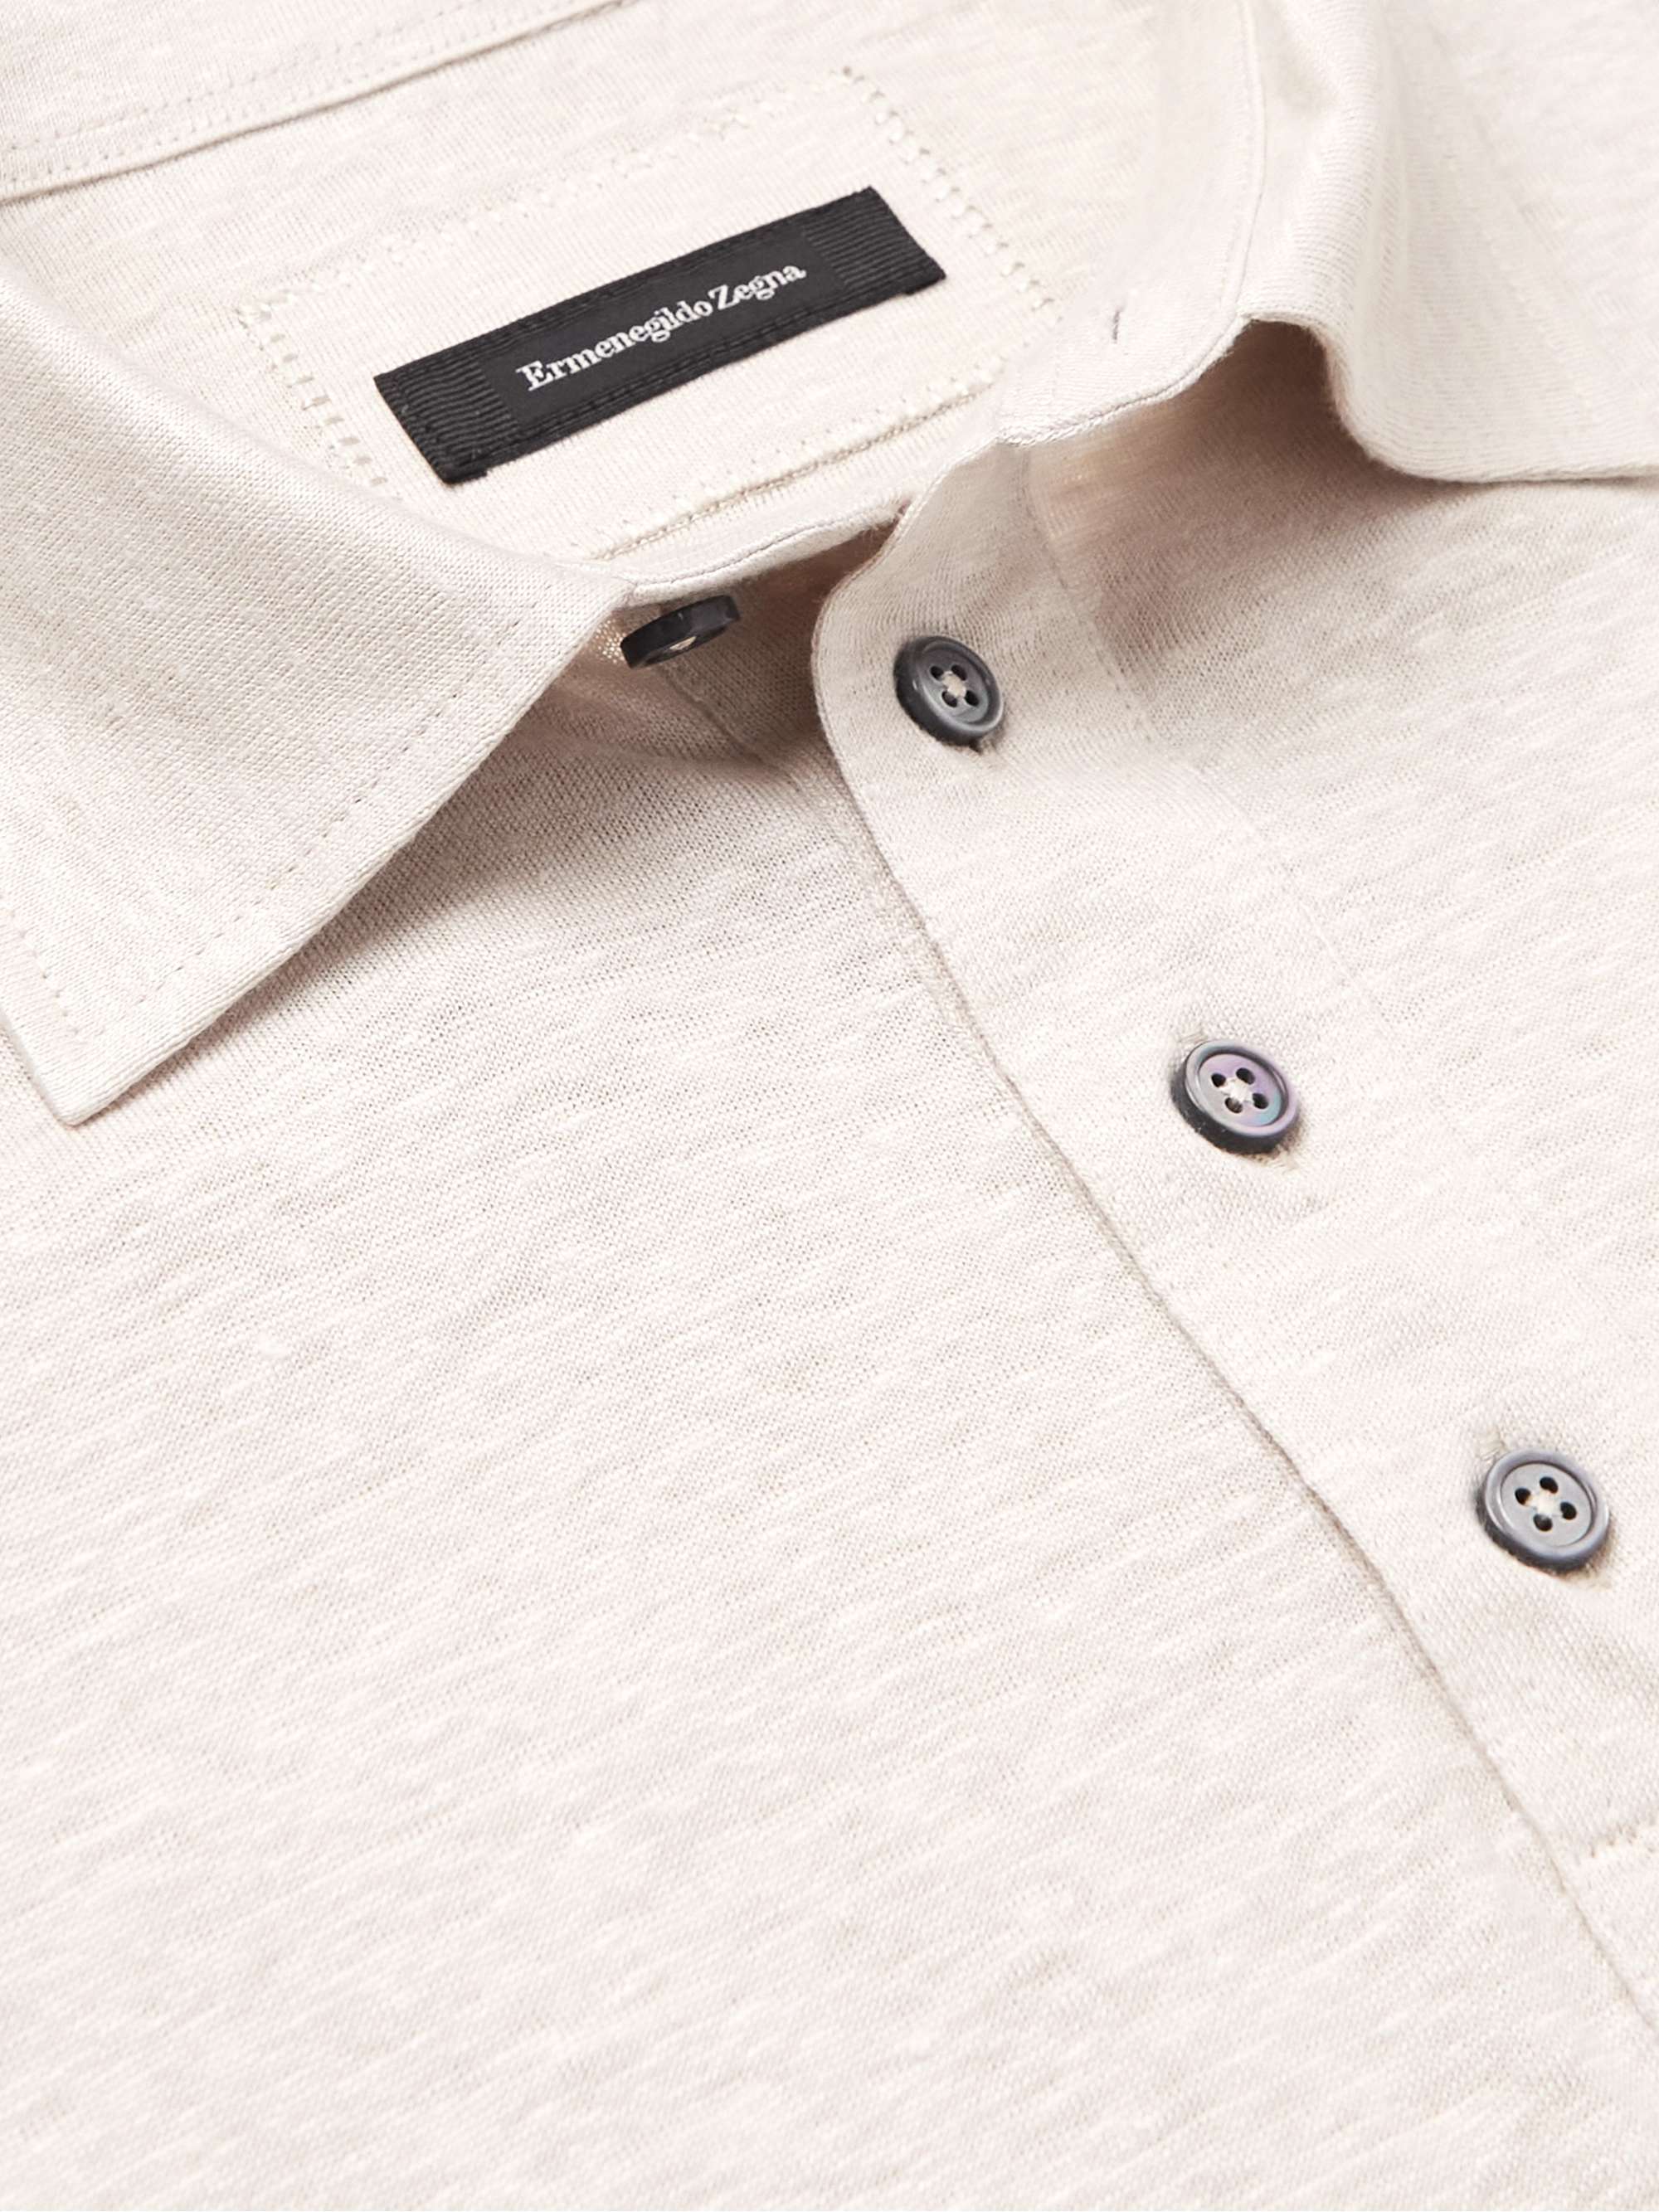 ZEGNA Linen Polo Shirt